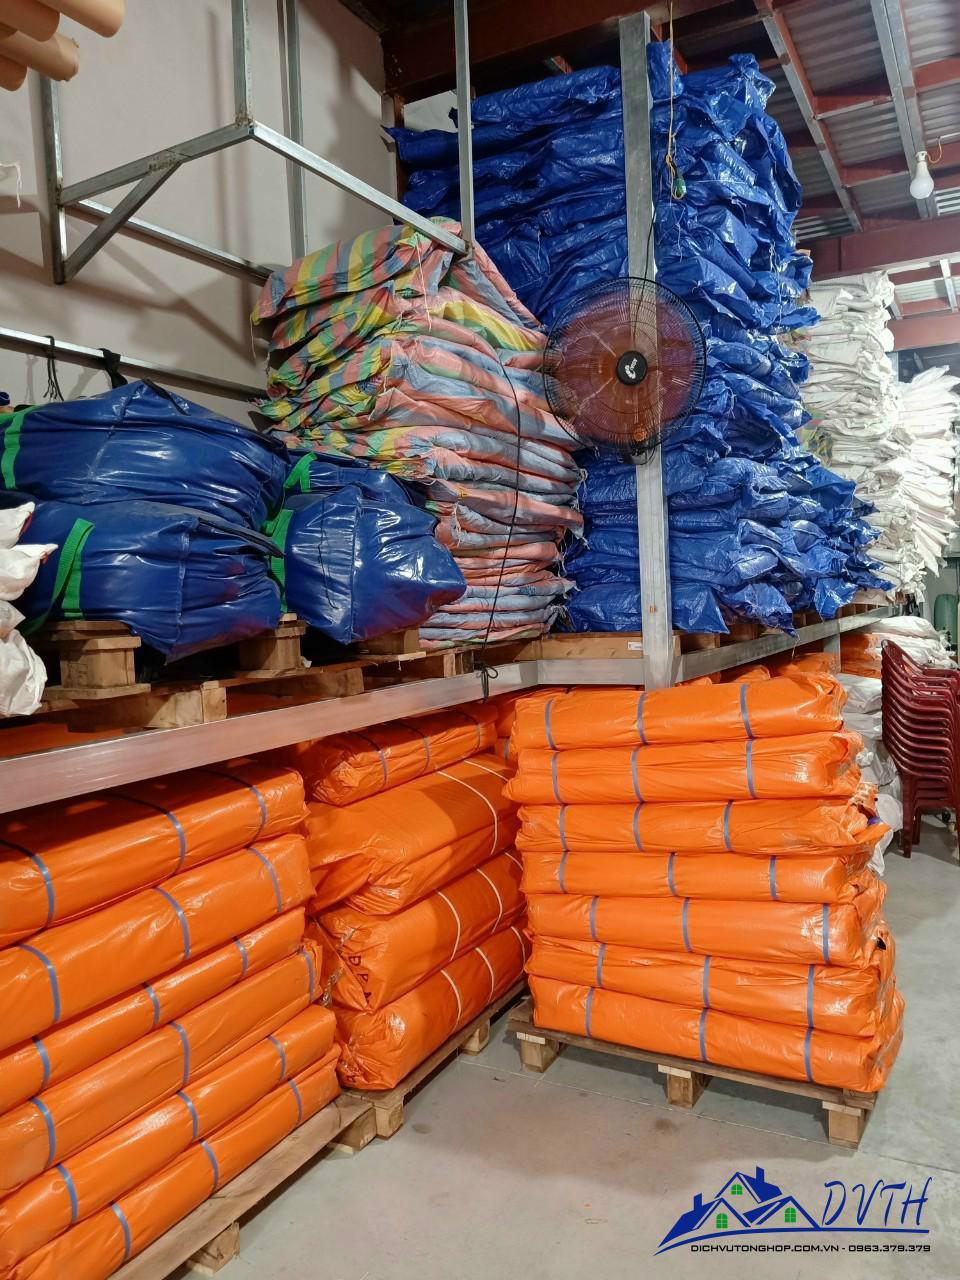 Bạt nhựa xanh cam tại Lai Châu